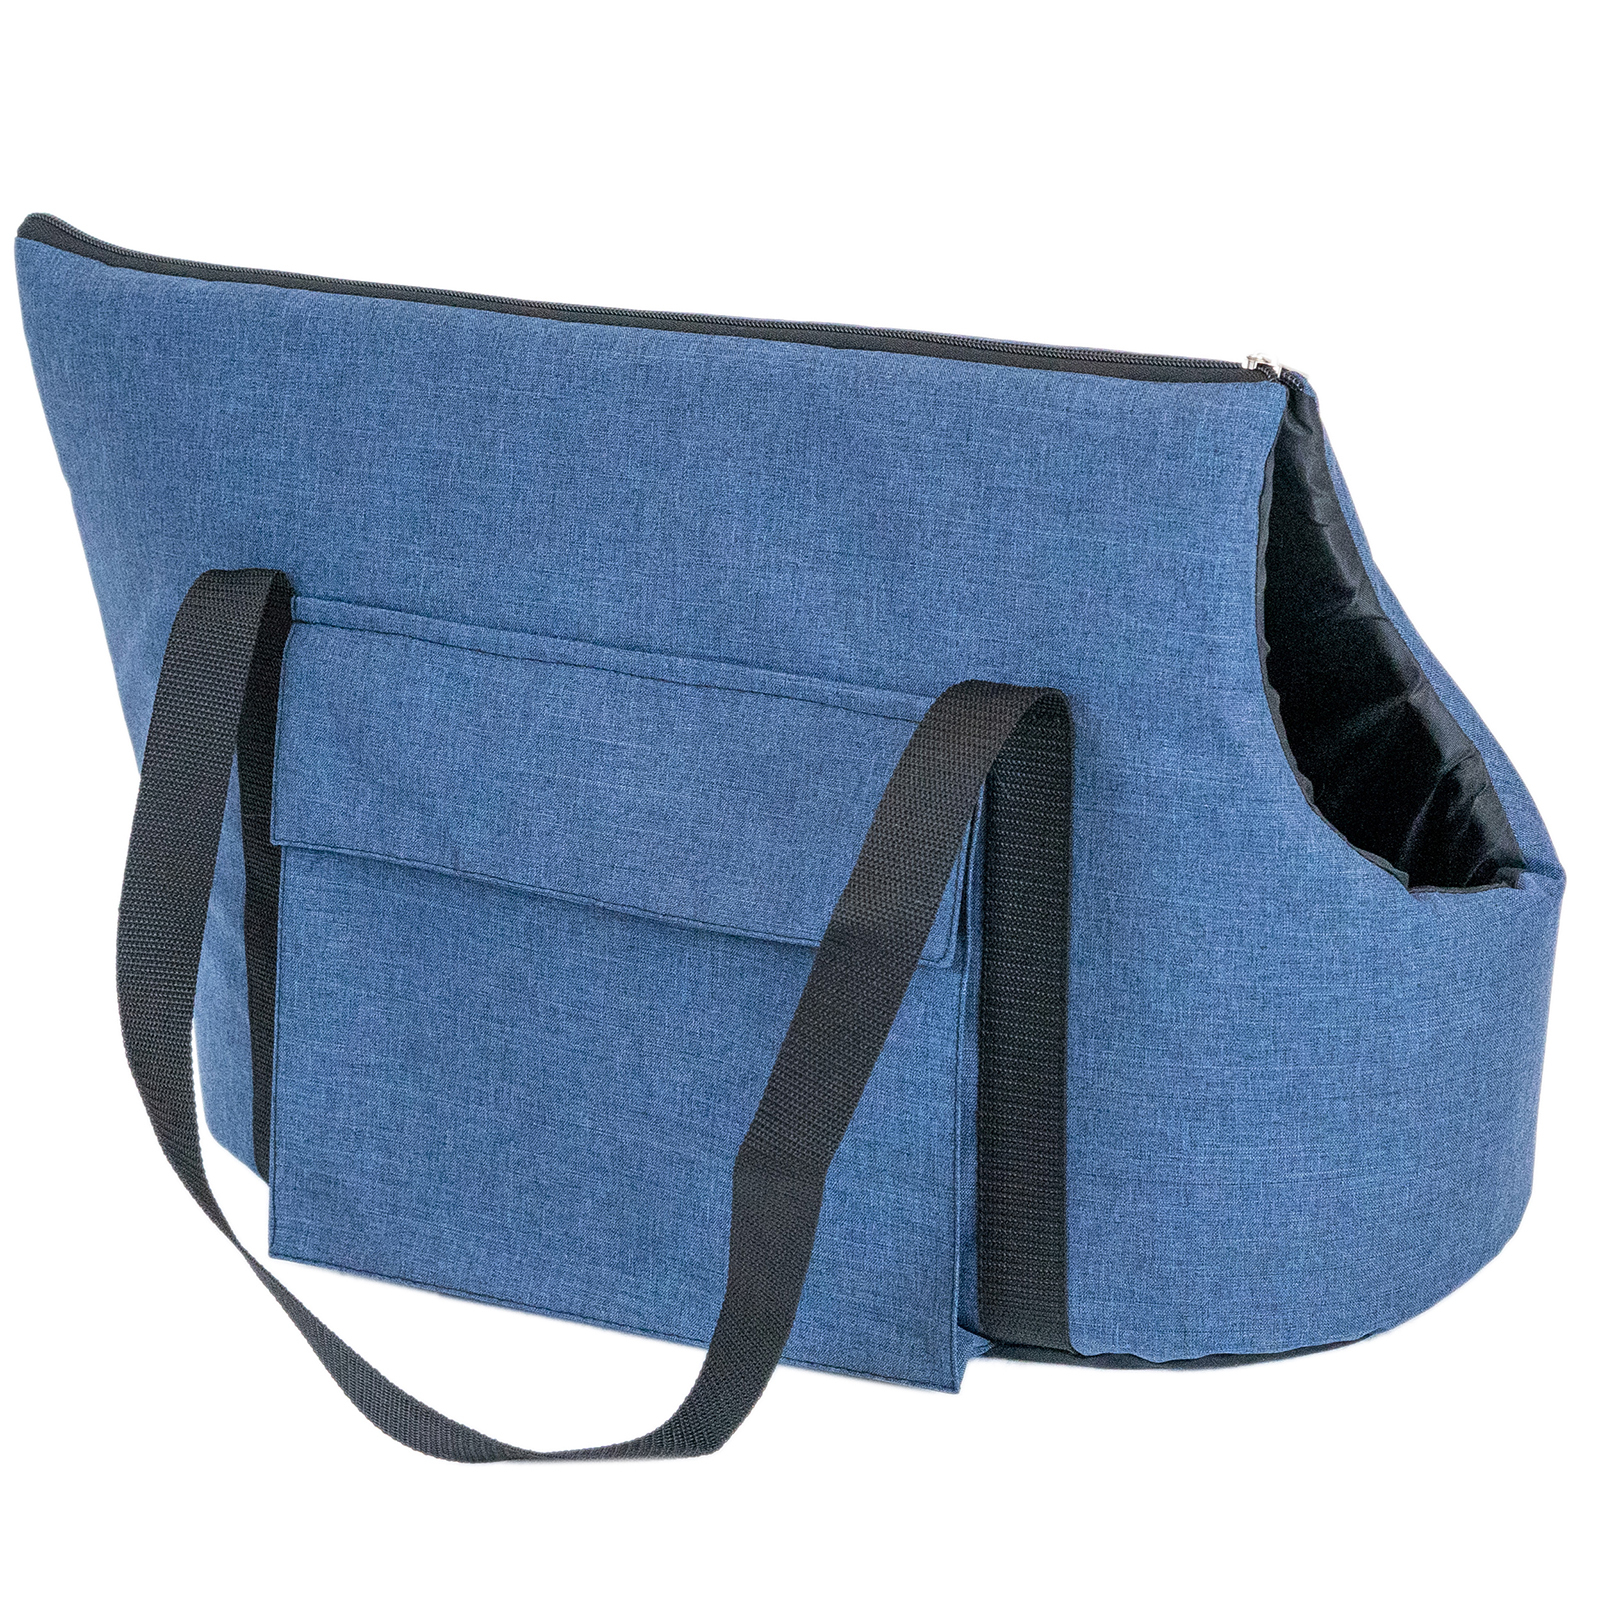 фото Переноска сумка блюз pettails №4 с 2мя карманами 58 х 27 х 34см (катионик,поролон), синяя